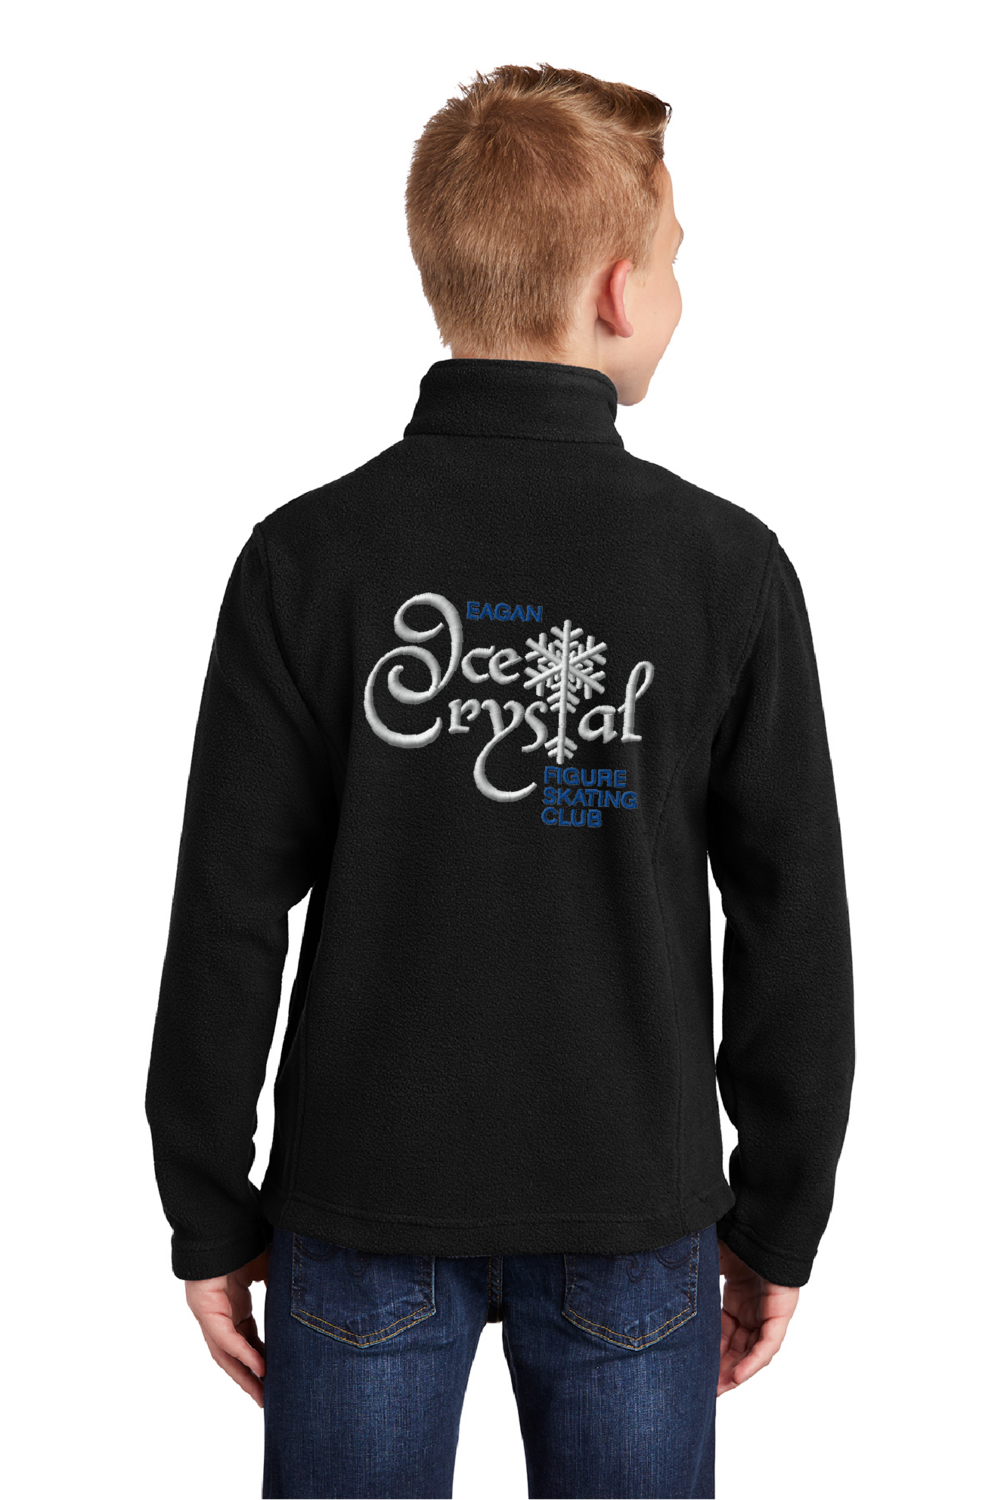 Eagan Ice Crystal Fleece Youth Jacket